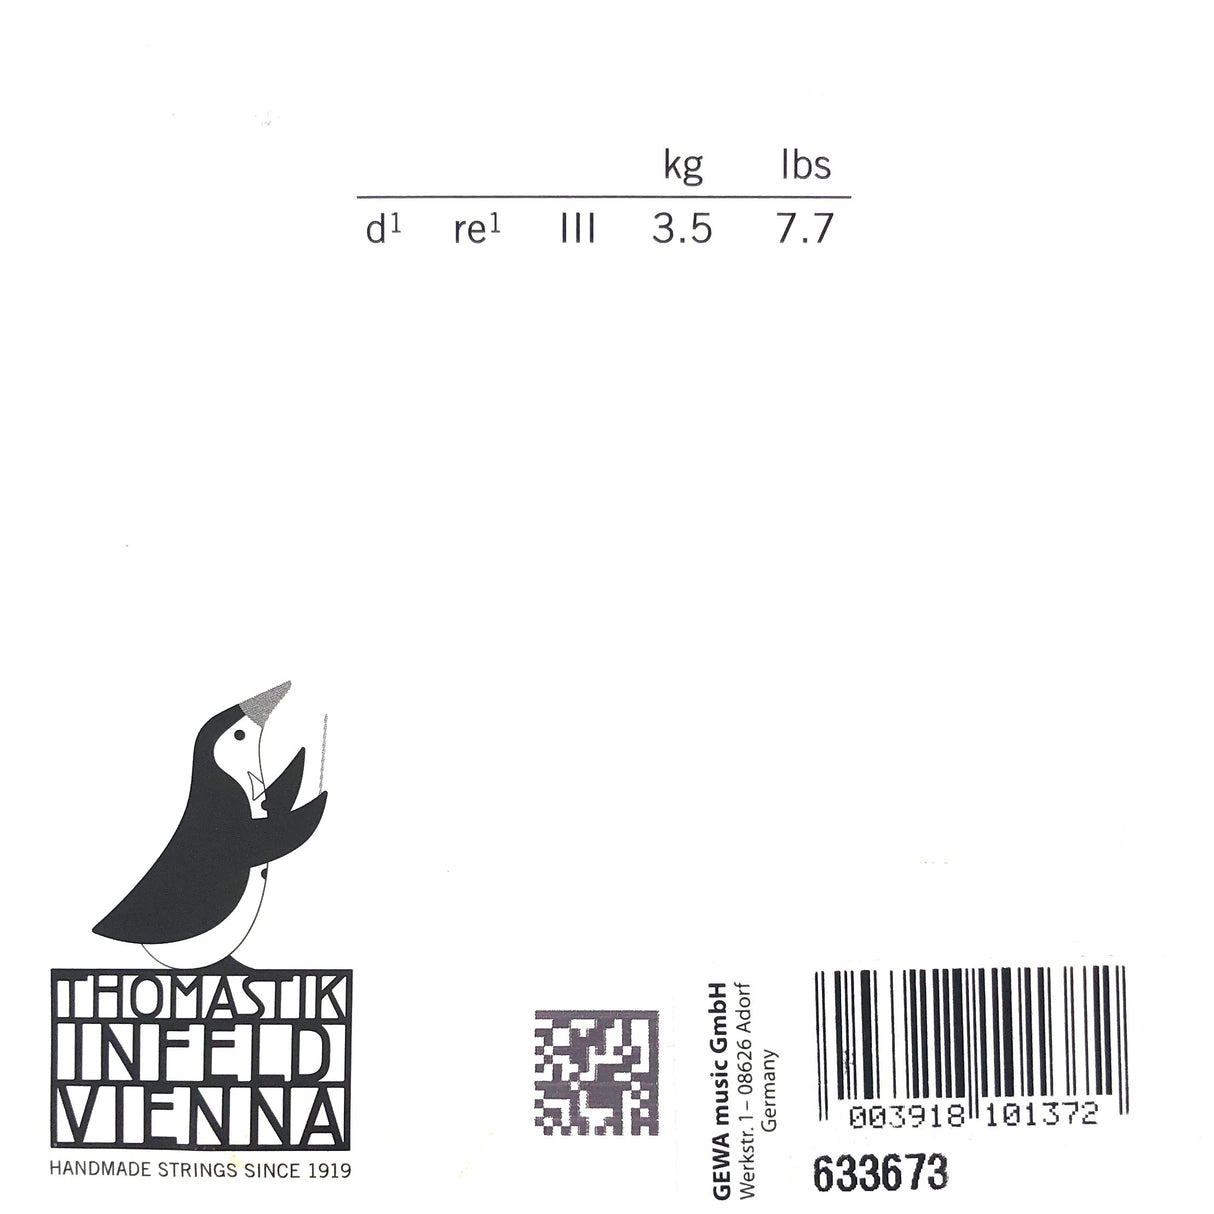 Thomastik Dominant Violin Einzelsaite D 132 mit Kugel 1/4 - Musik-Ebert Gmbh